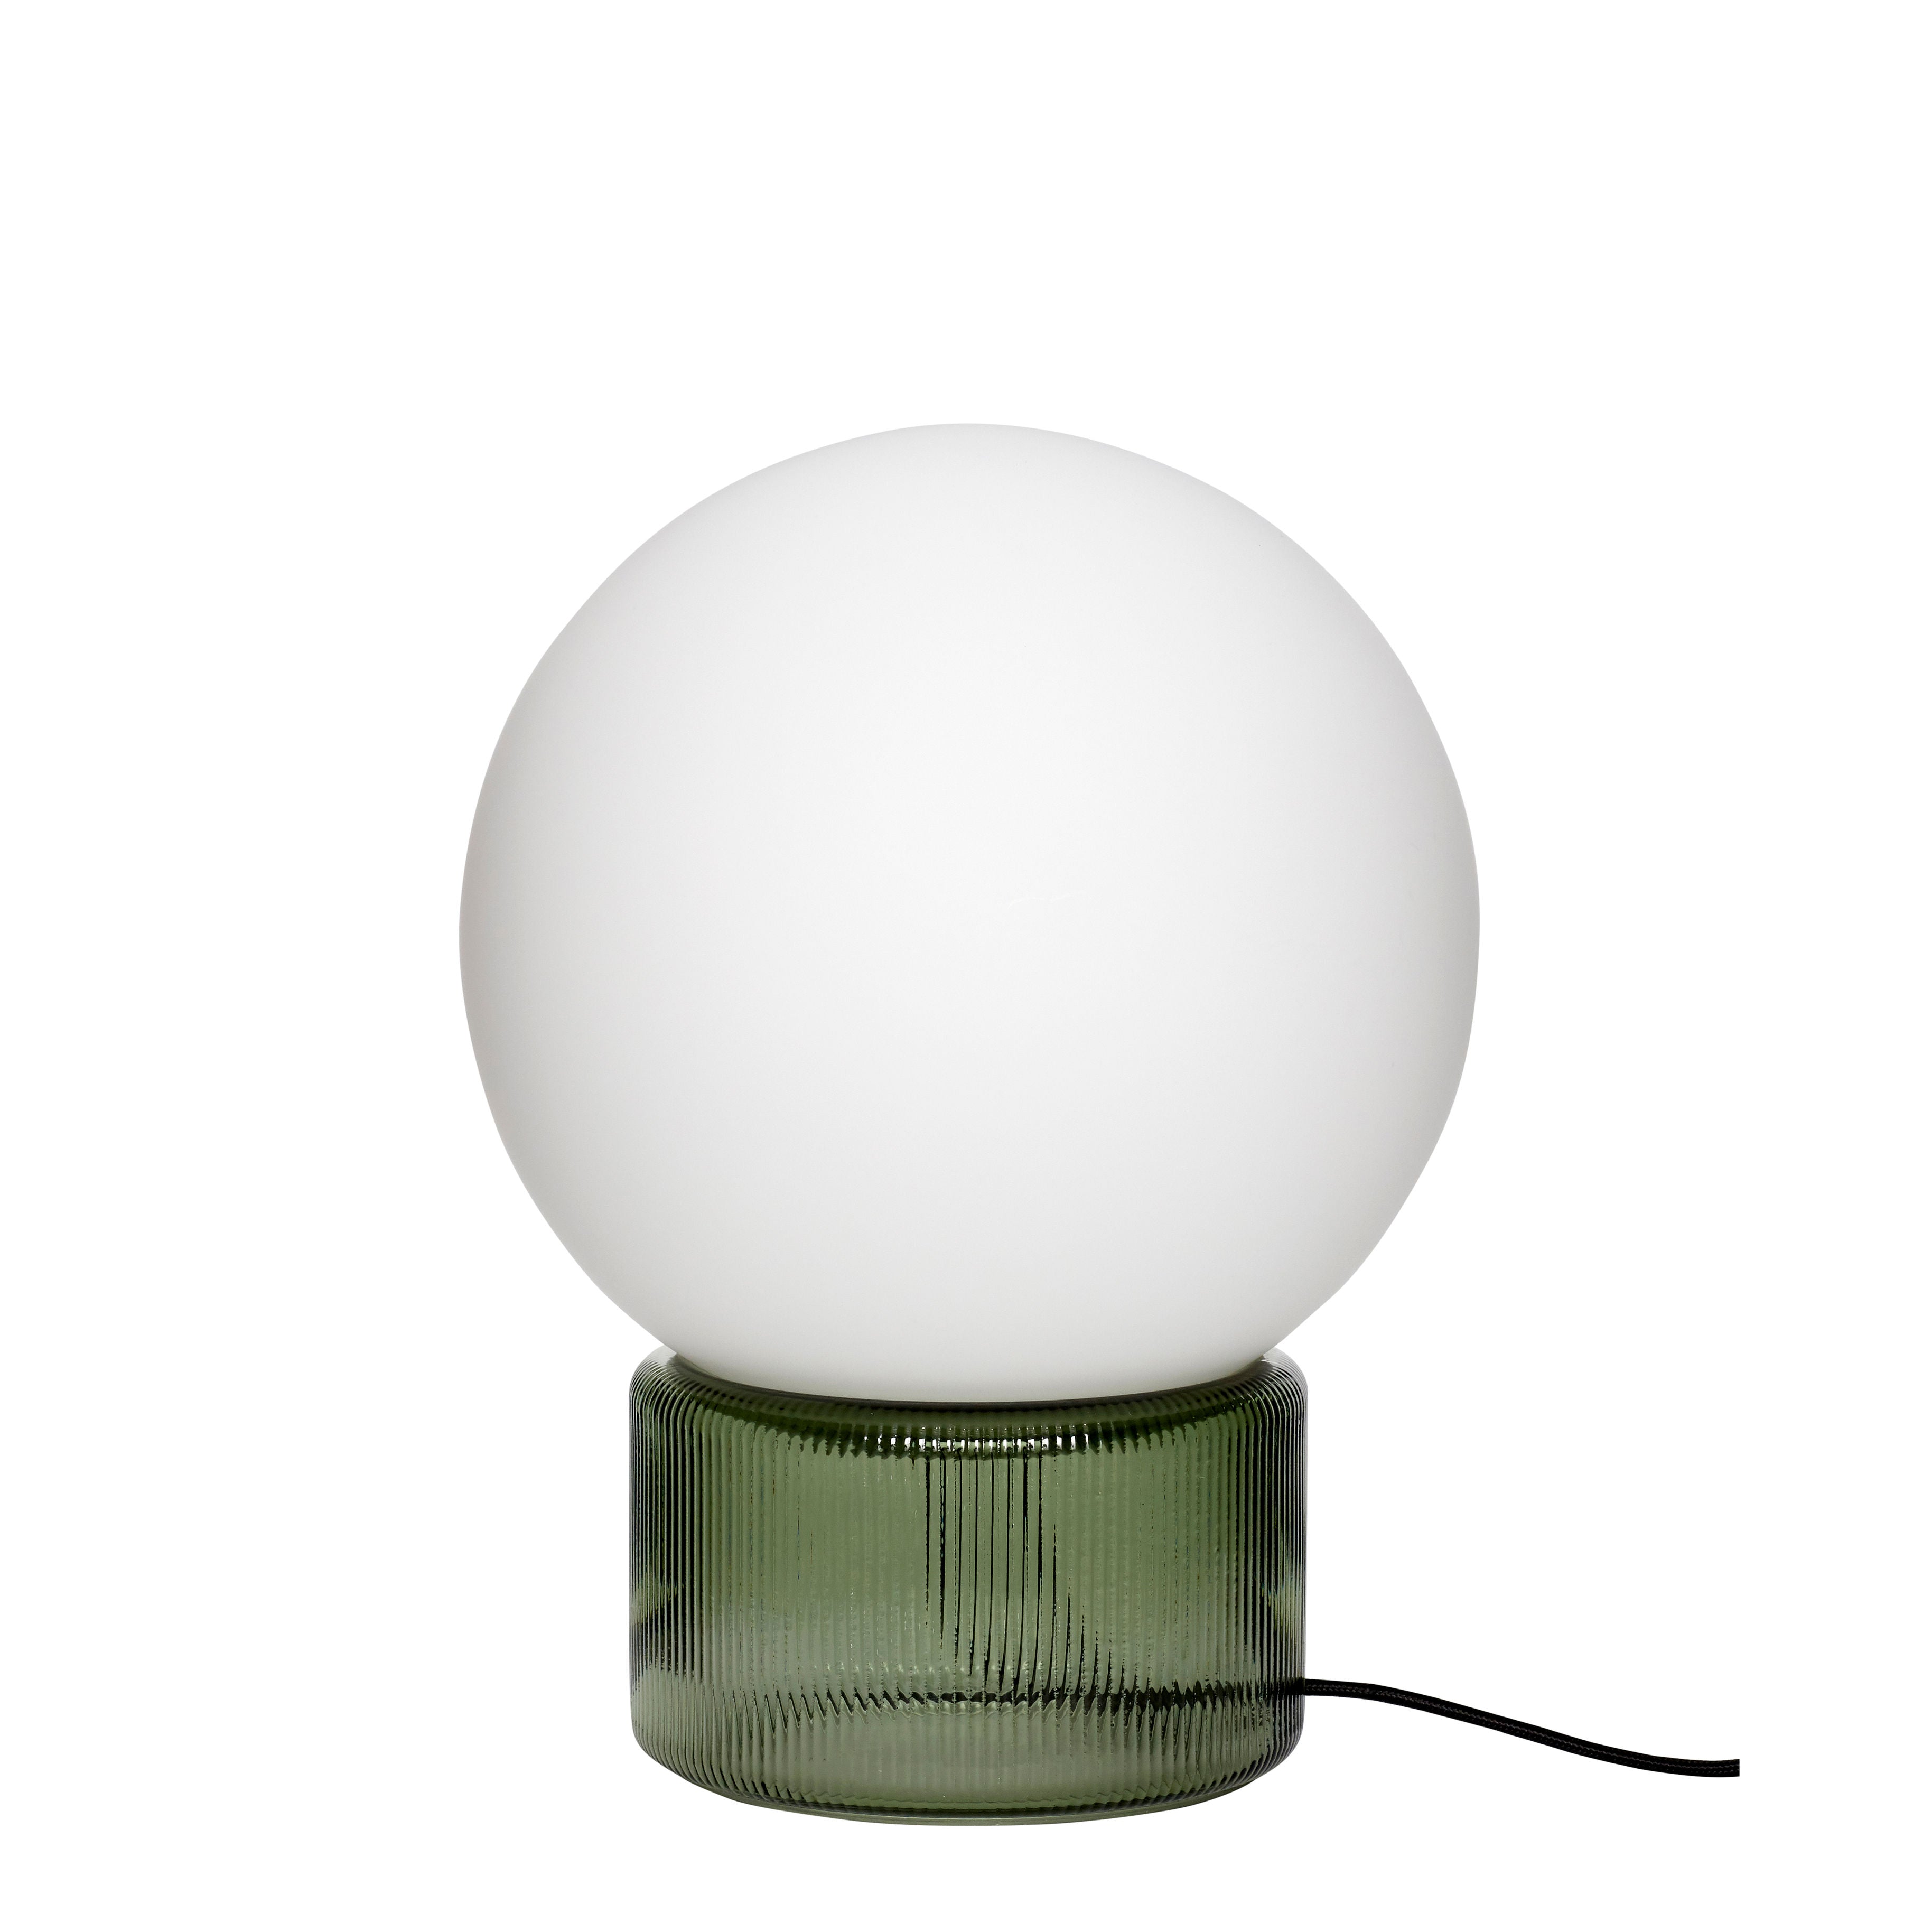 Die Tischleuchte "Sphere" in Grün besteht aus strukturiertem Glas, das einen eleganten und zeitlosen Look schafft, mit einer matten Glühbirne für einen schönen Kontrast und einem handgefertigten Design, das sie zu einem vielseitigen Blickfang in jeder Einrichtung macht